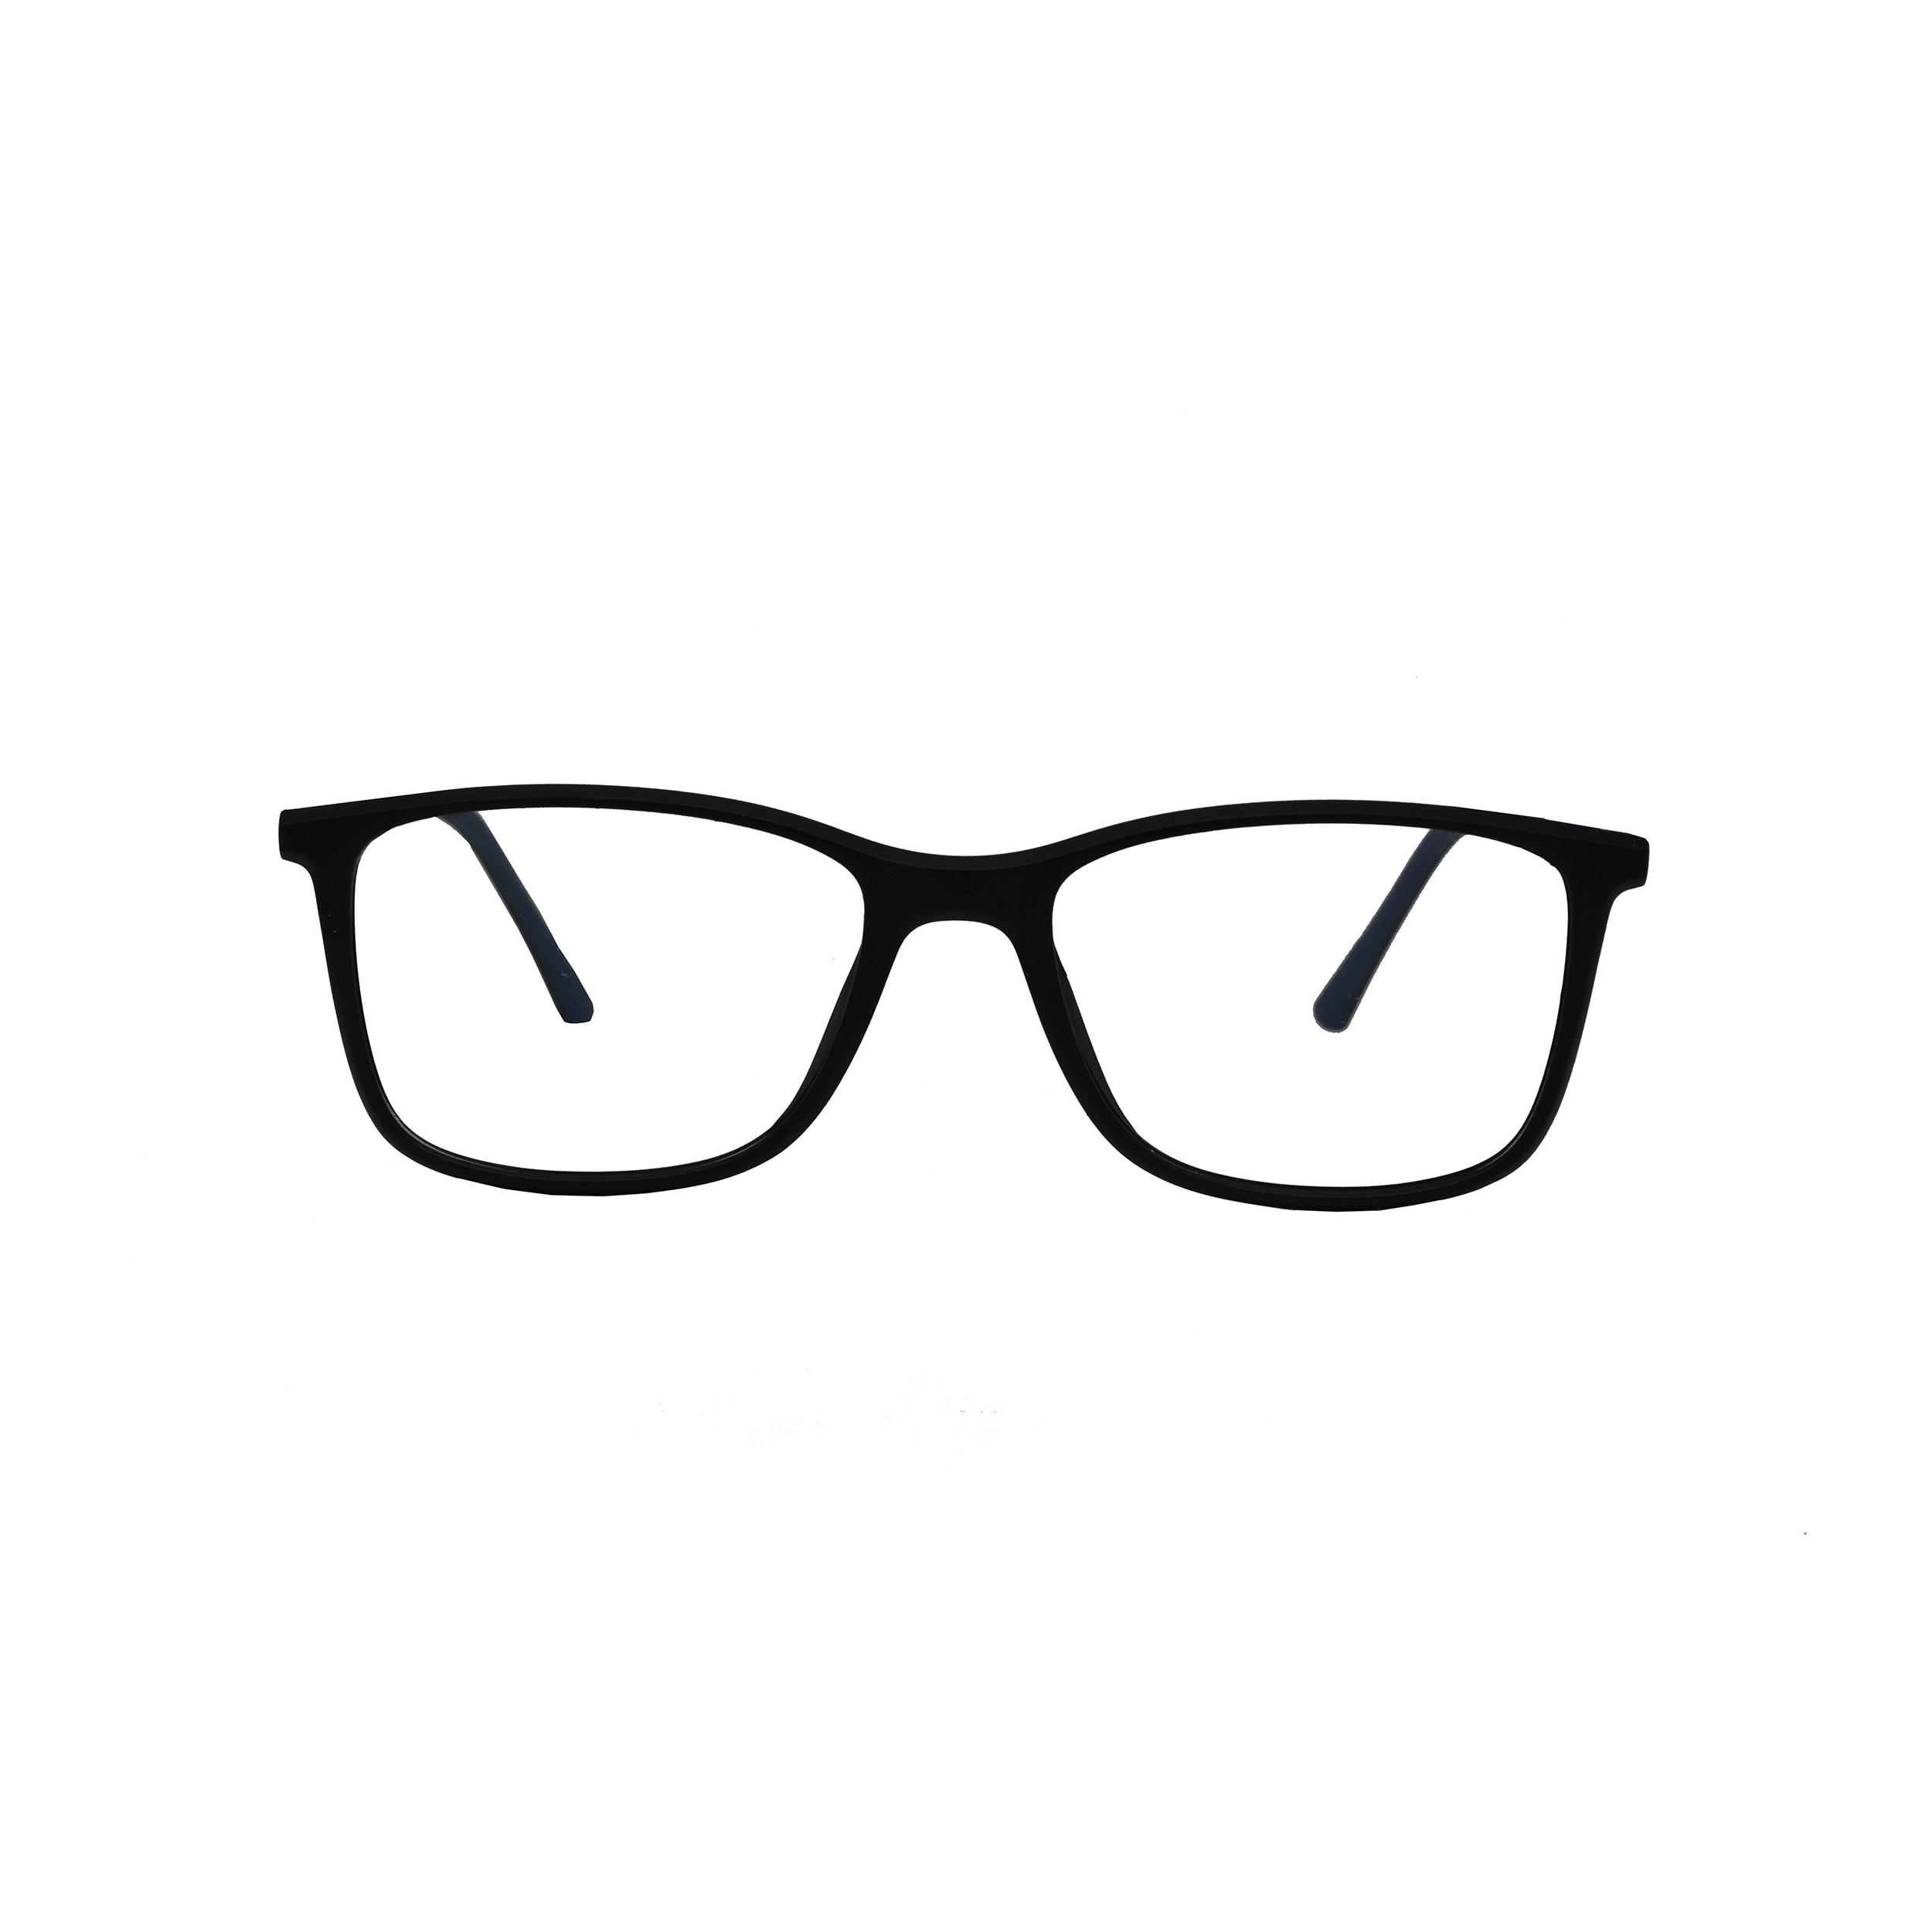 نکته خرید - قیمت روز فریم عینک طبی مدل 2029 C2 5018143 خرید